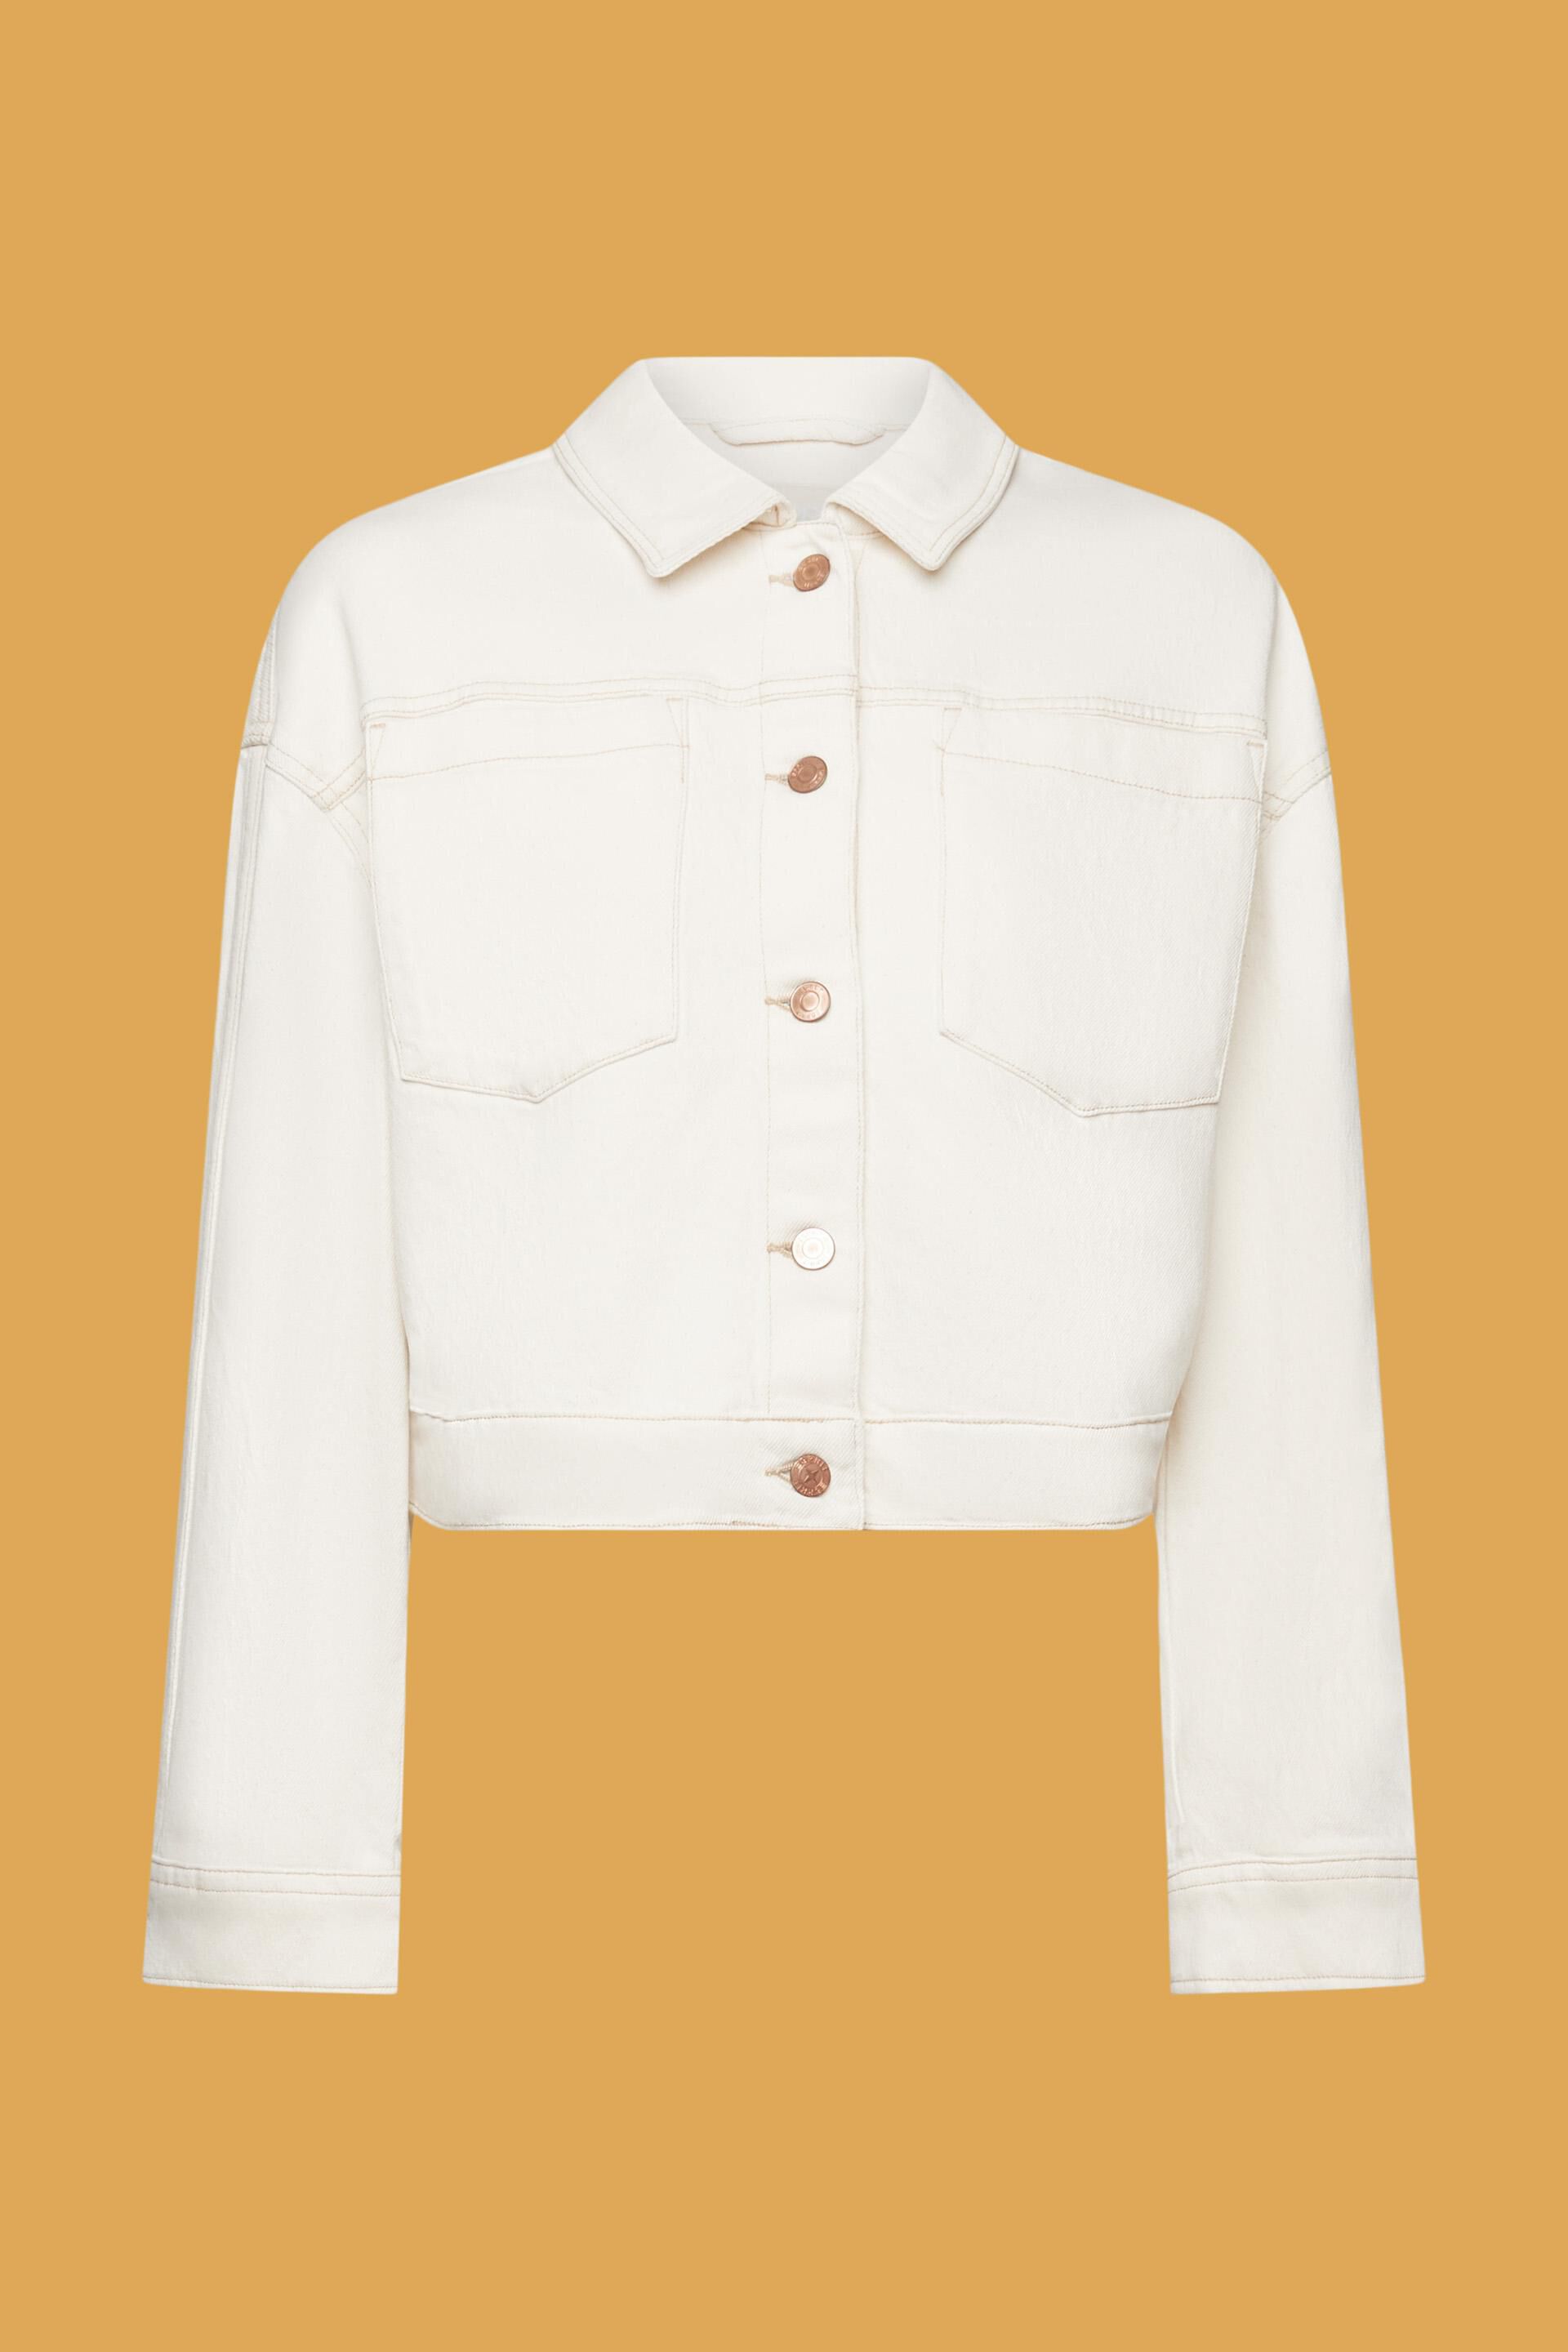 Zara cropped jean jacket - Gem